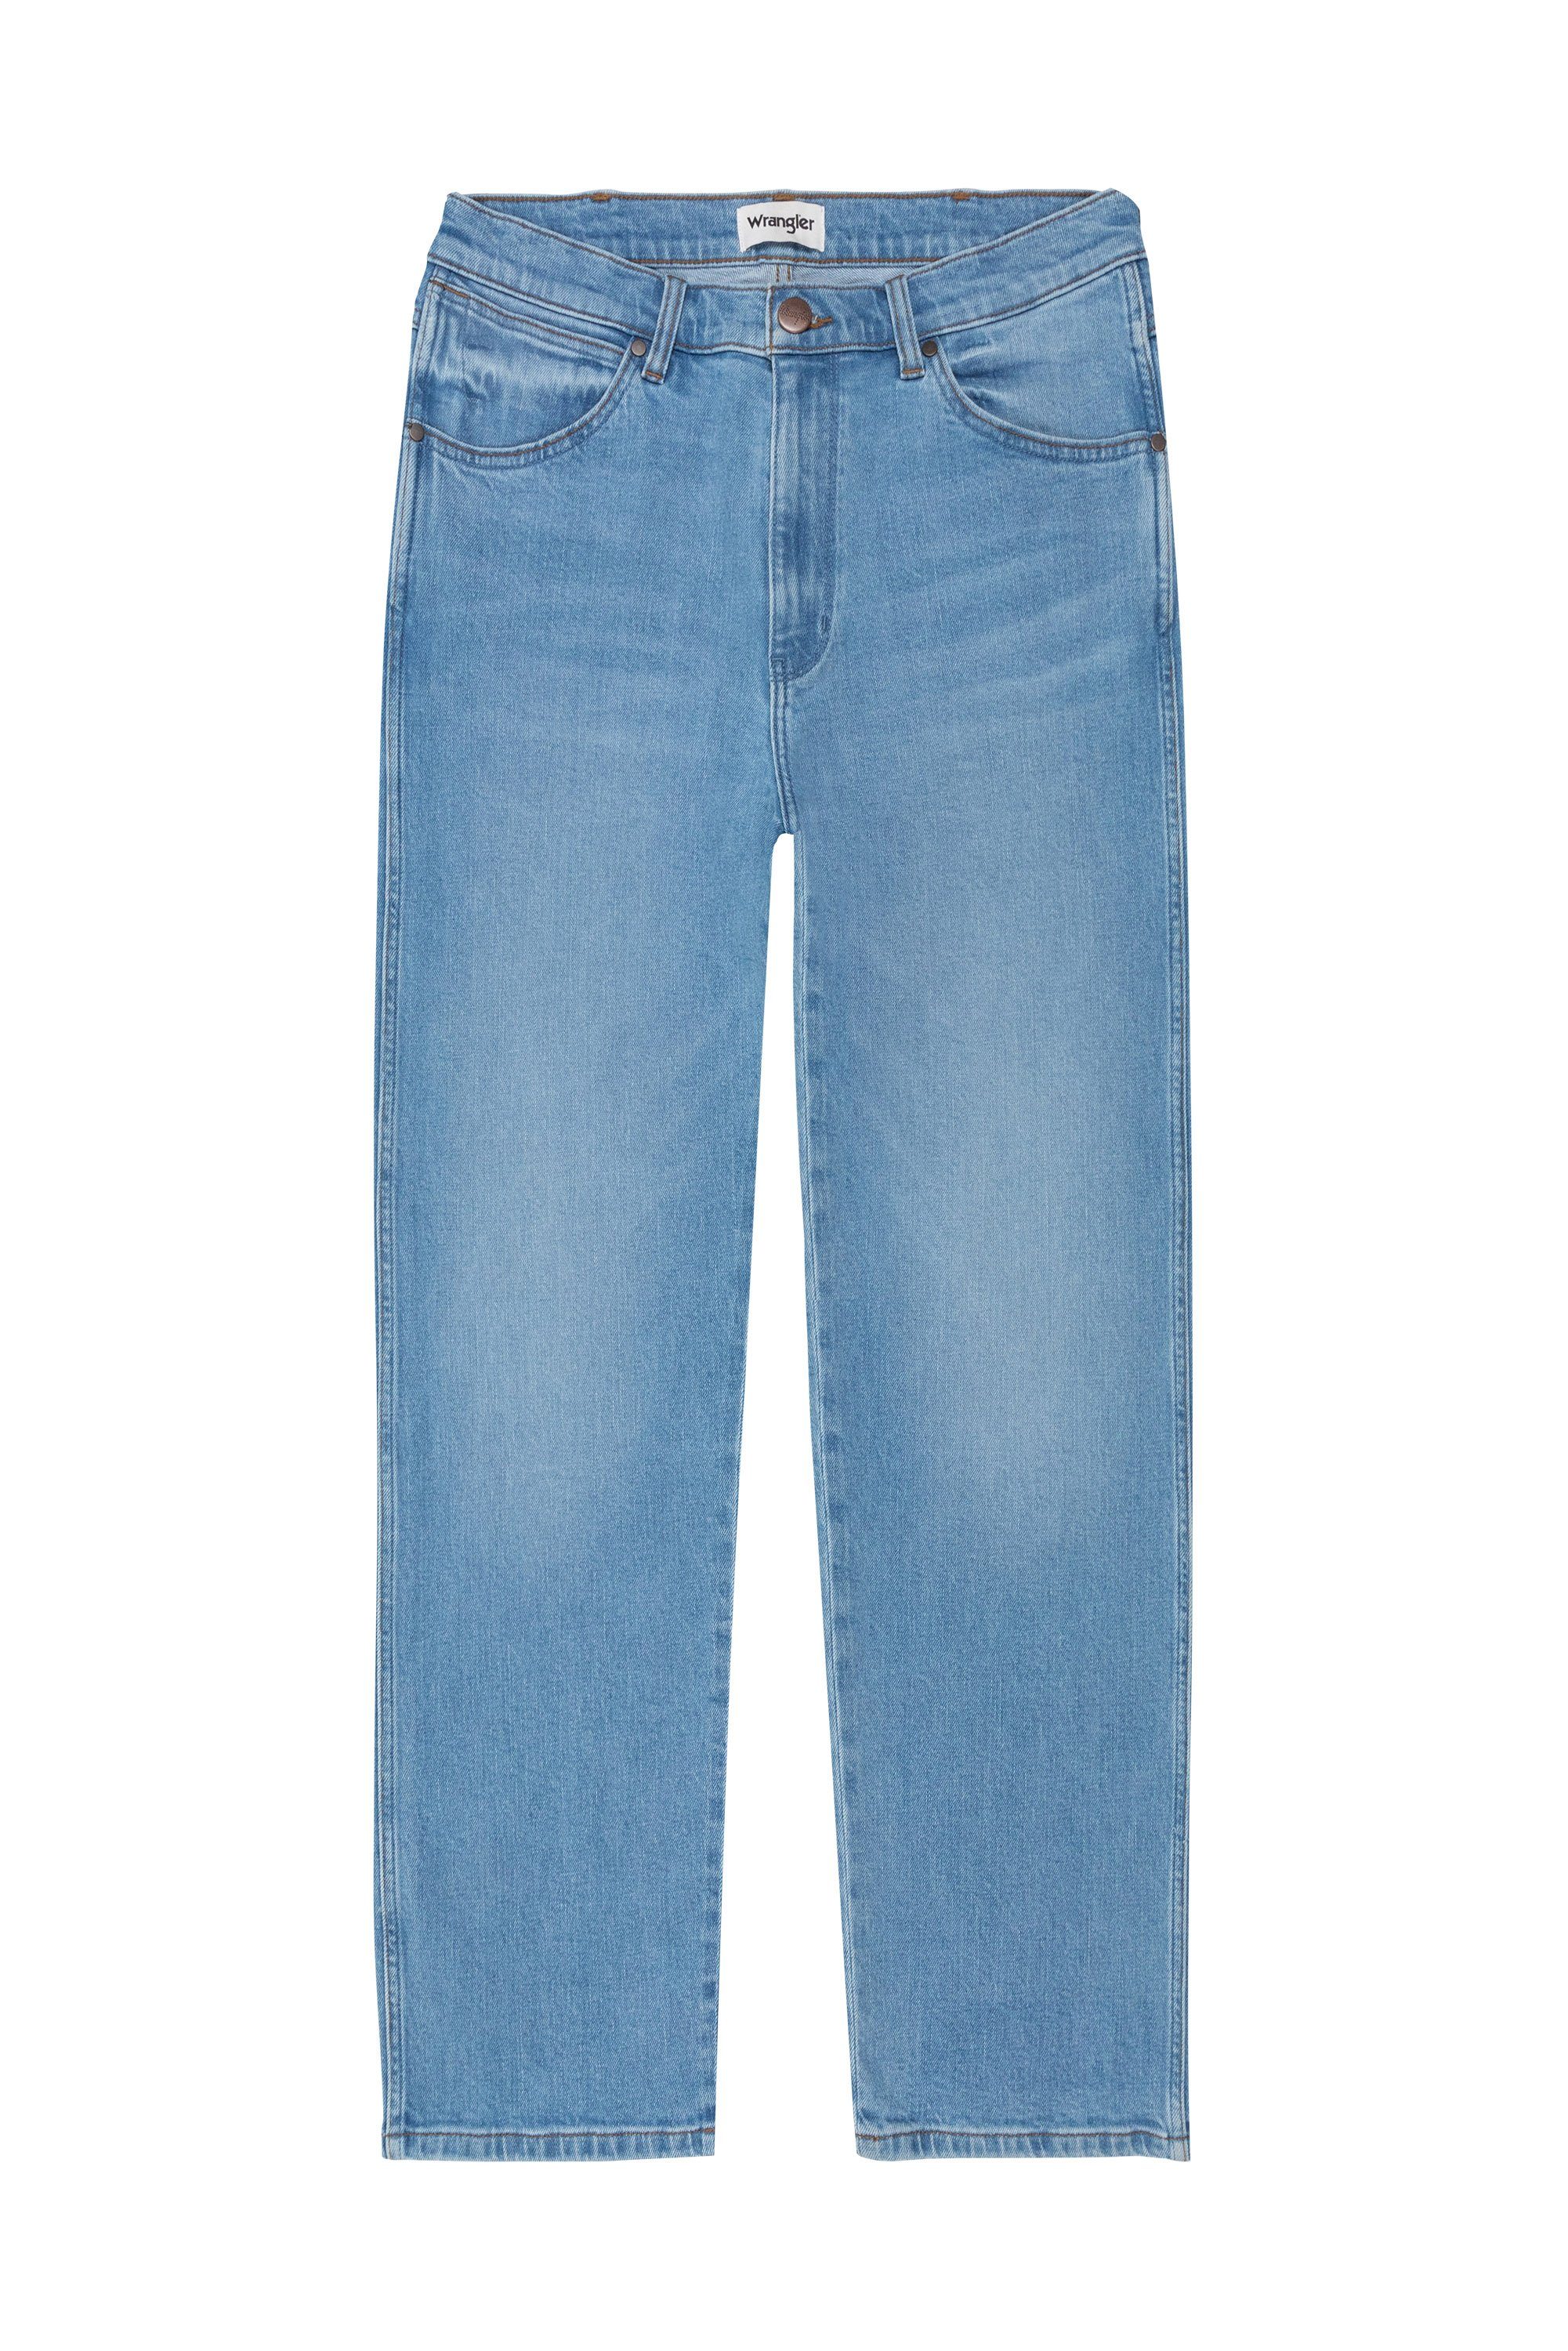 841 Wrangler Redding Regular-fit-Jeans Wrangler Hose